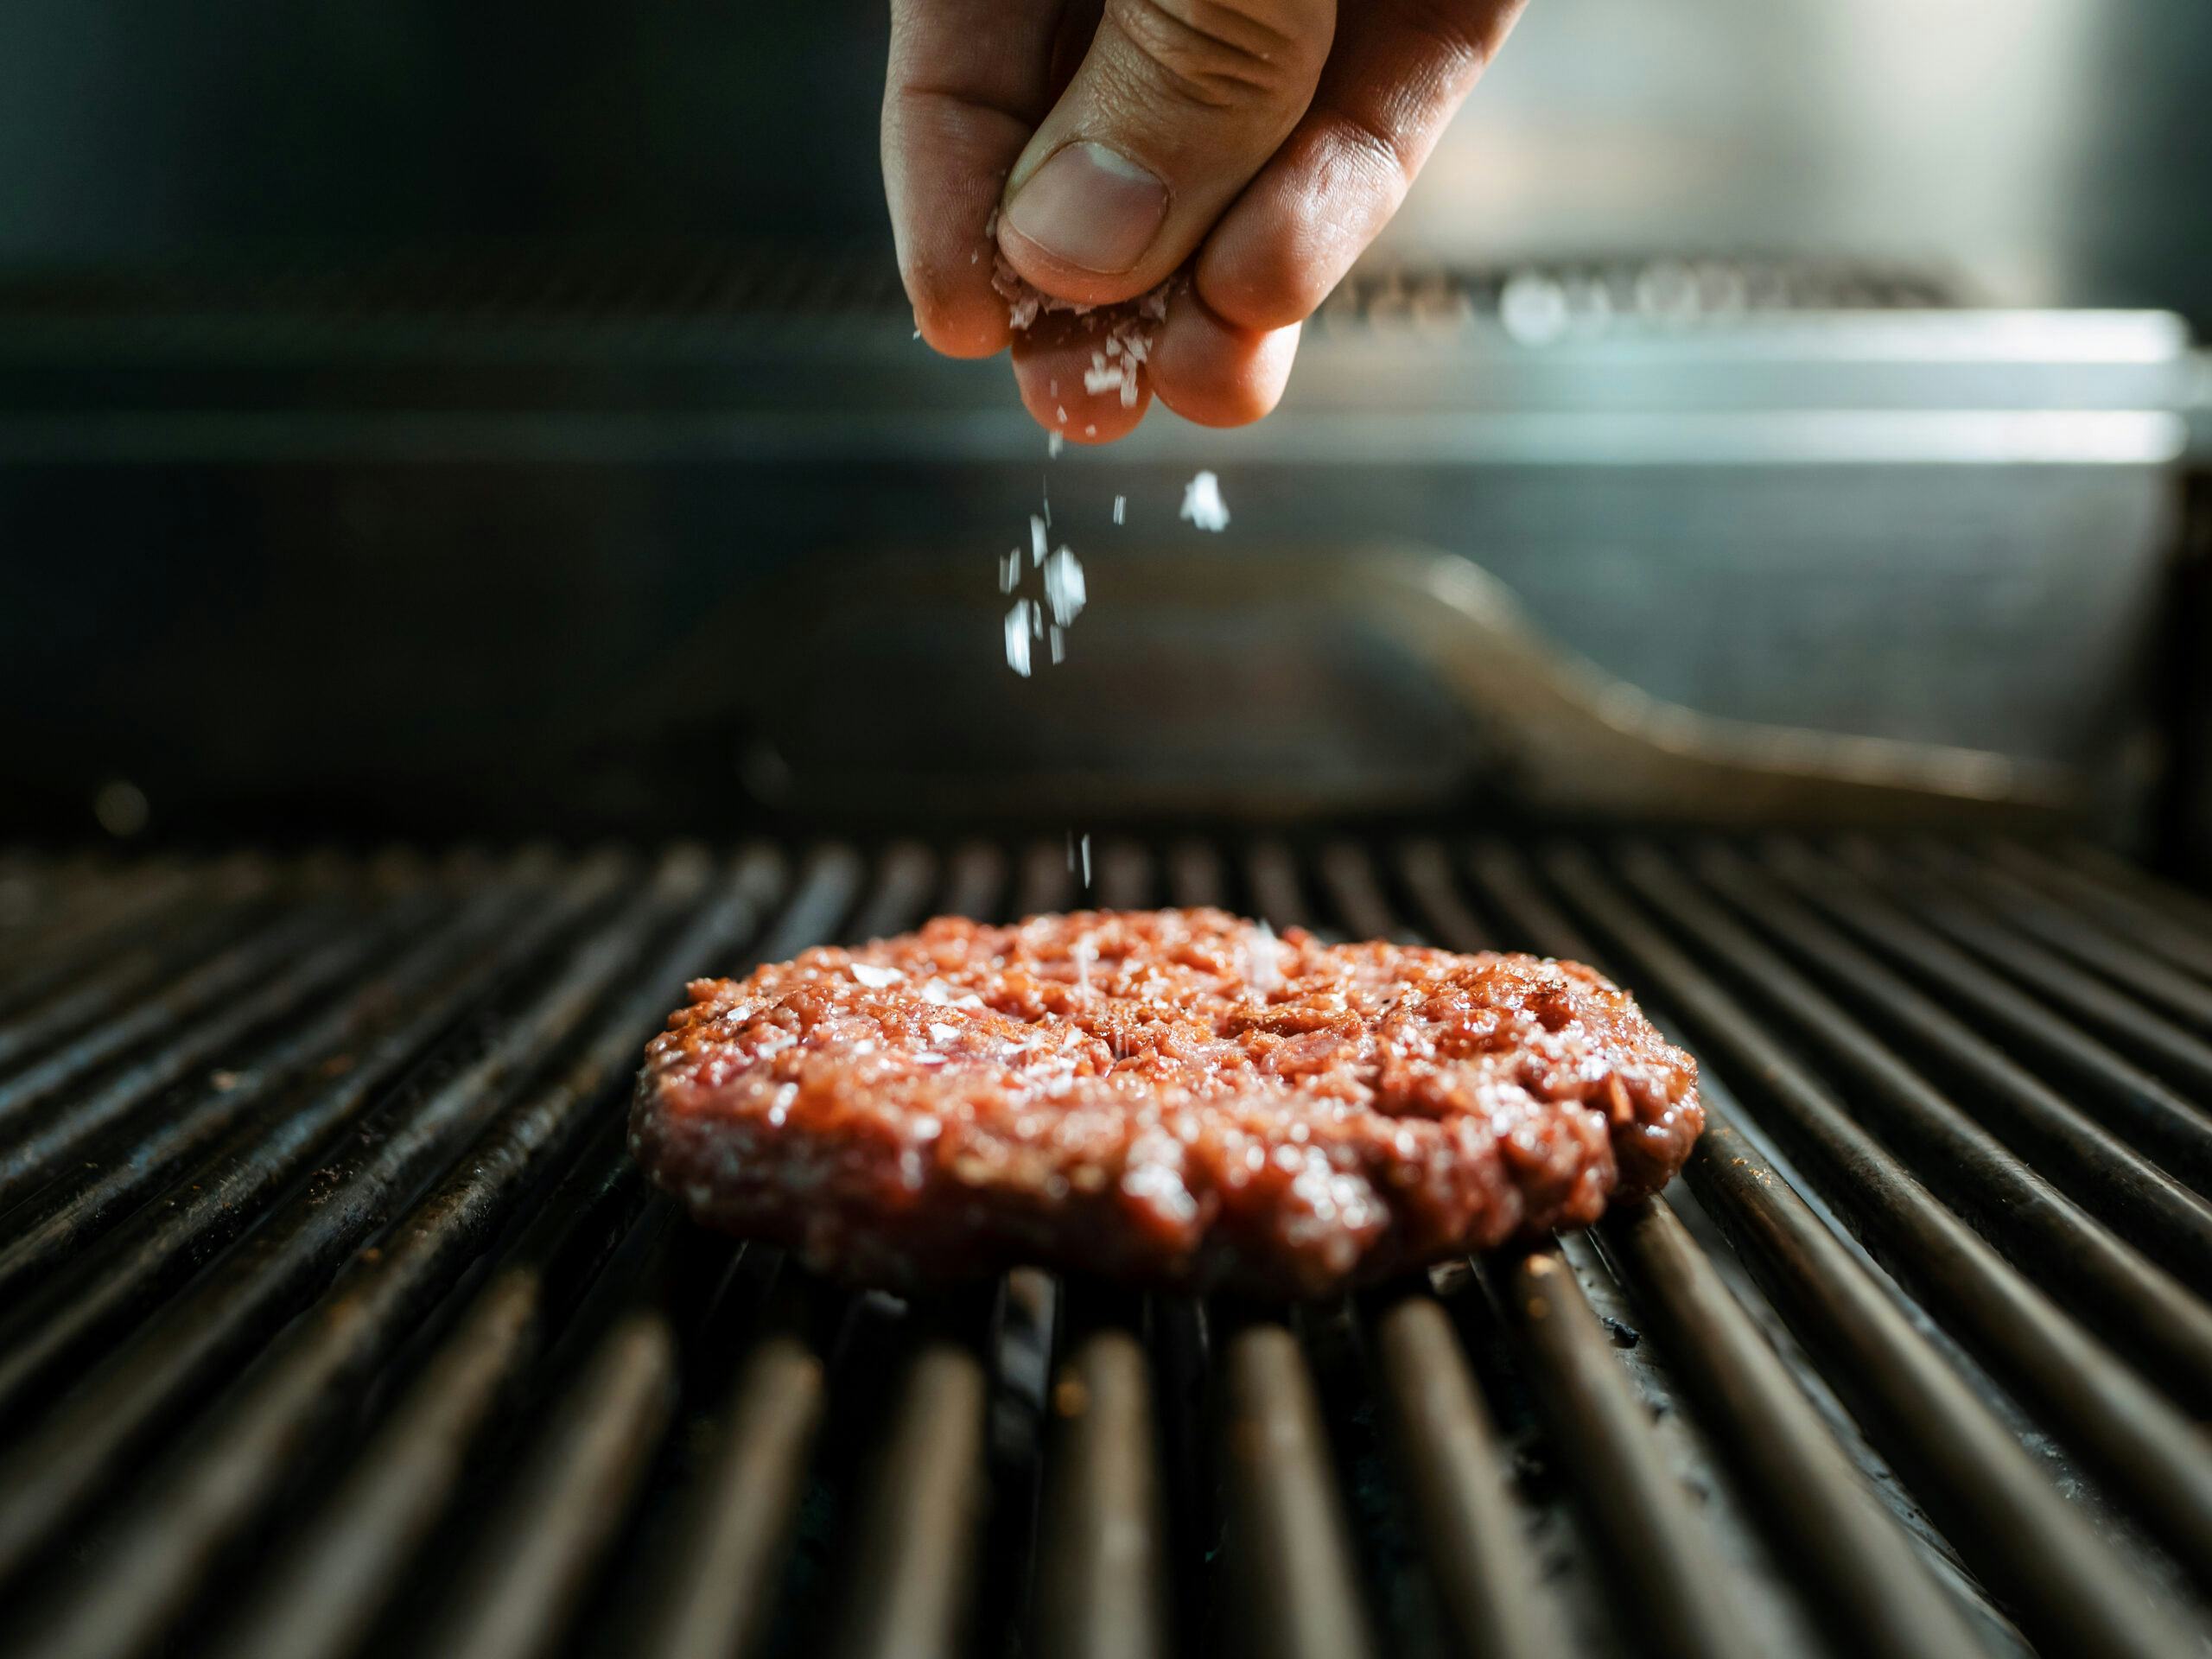 Een horecabedrijf dat een runderhamburger specifiek rosé serveert is volgens de hygiënecode verplicht om onderzoeksresultaten te tonen per batch. 